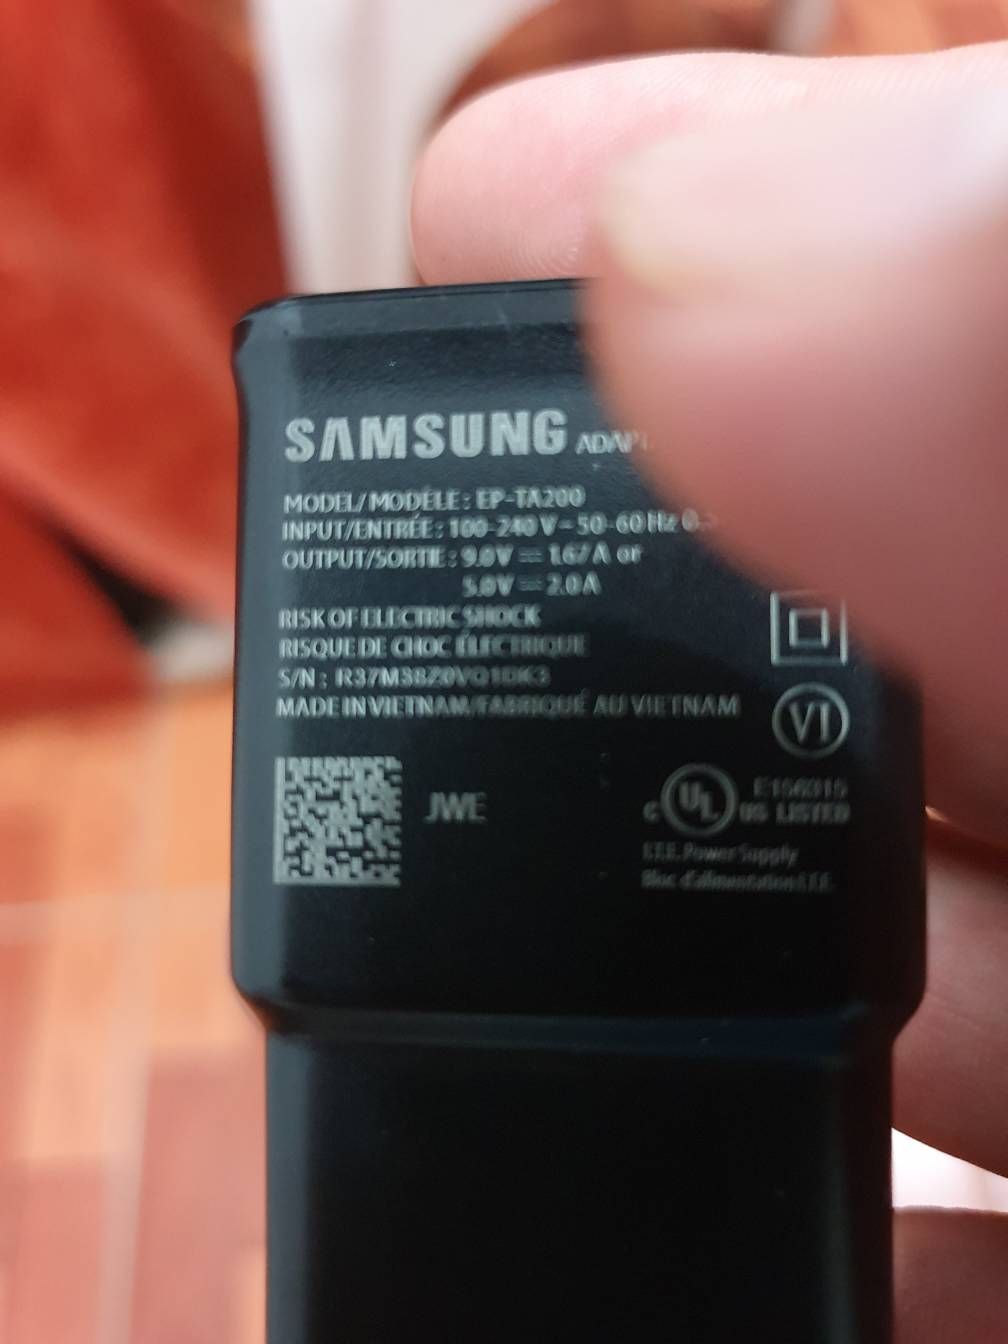 como identificar un cargador original samsung? - Samsung Members